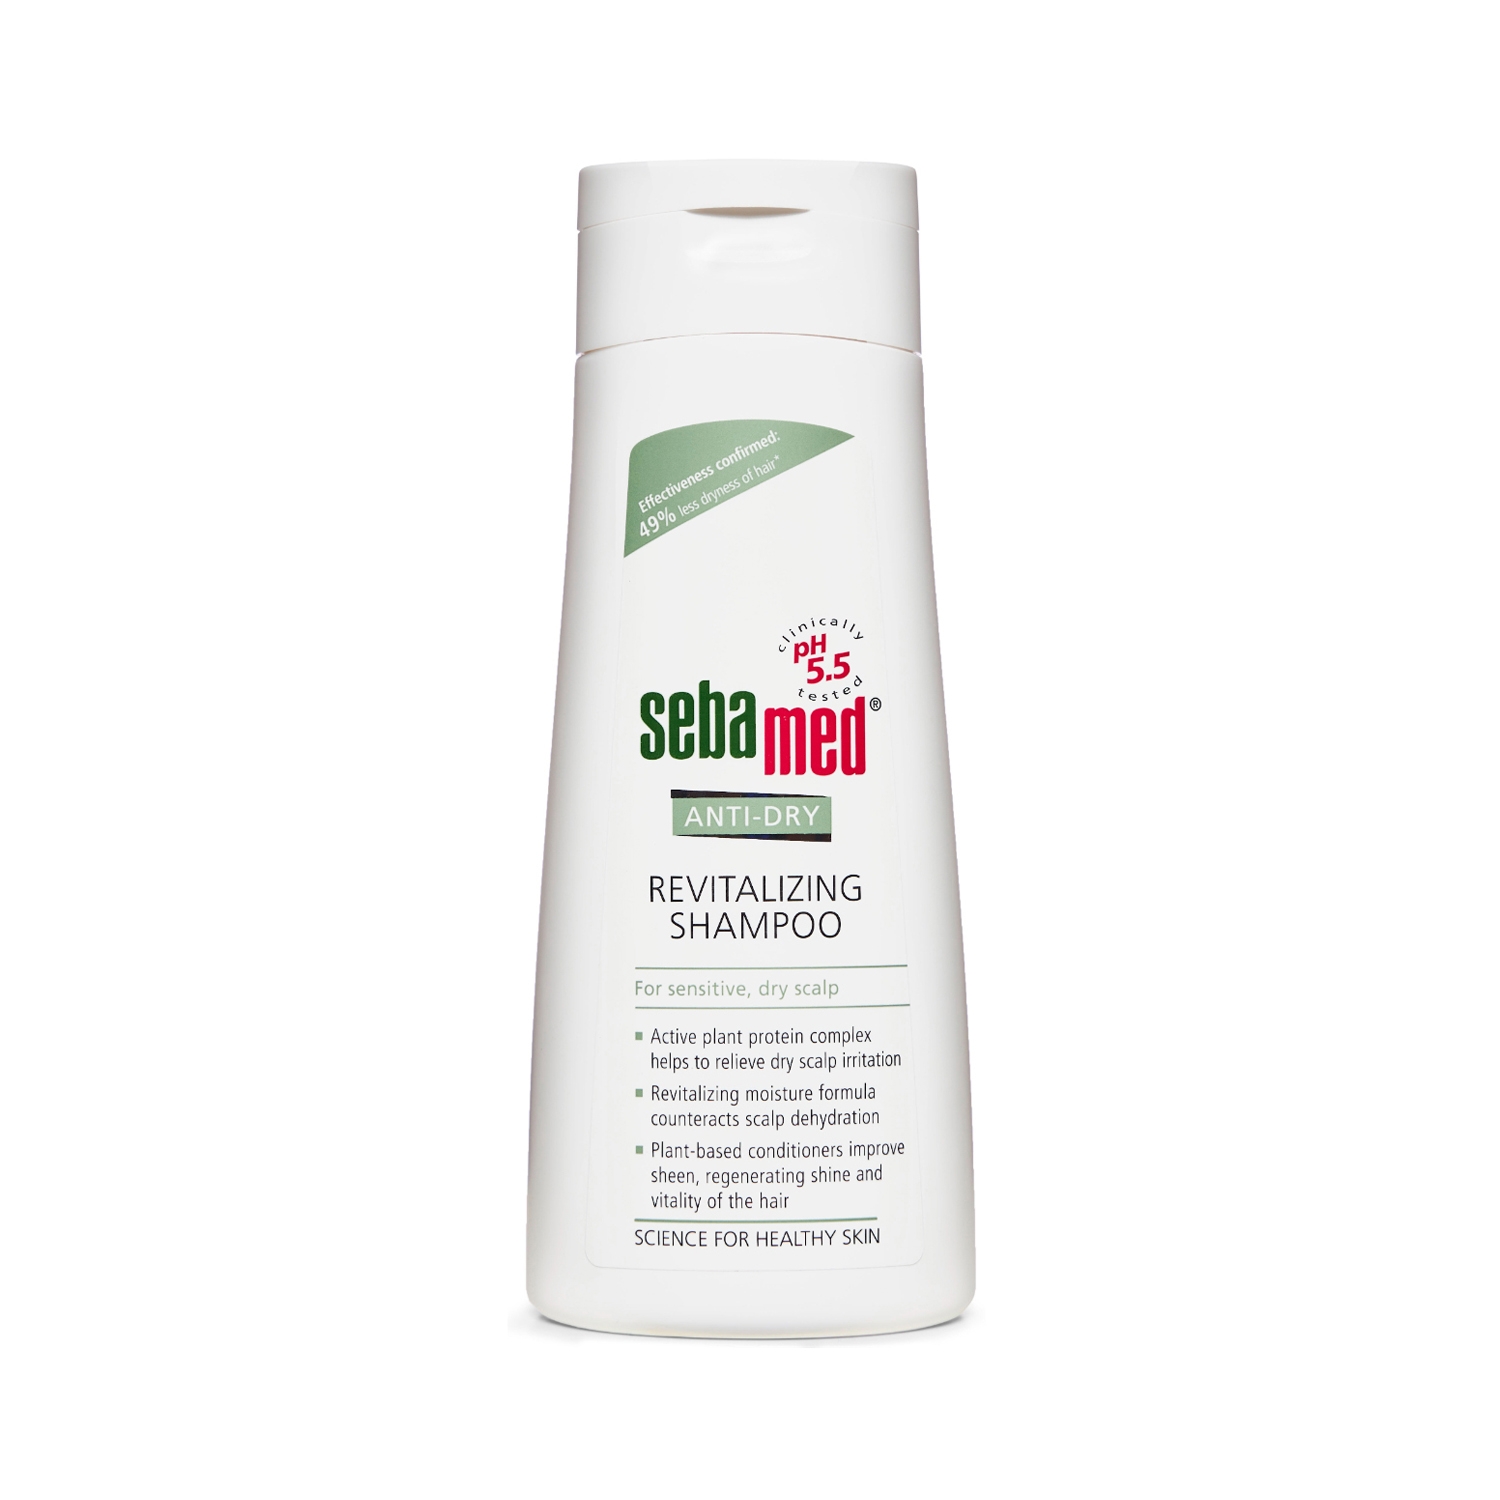 Sebamed | Sebamed Anti Dry Revitalizing Shampoo (200ml)